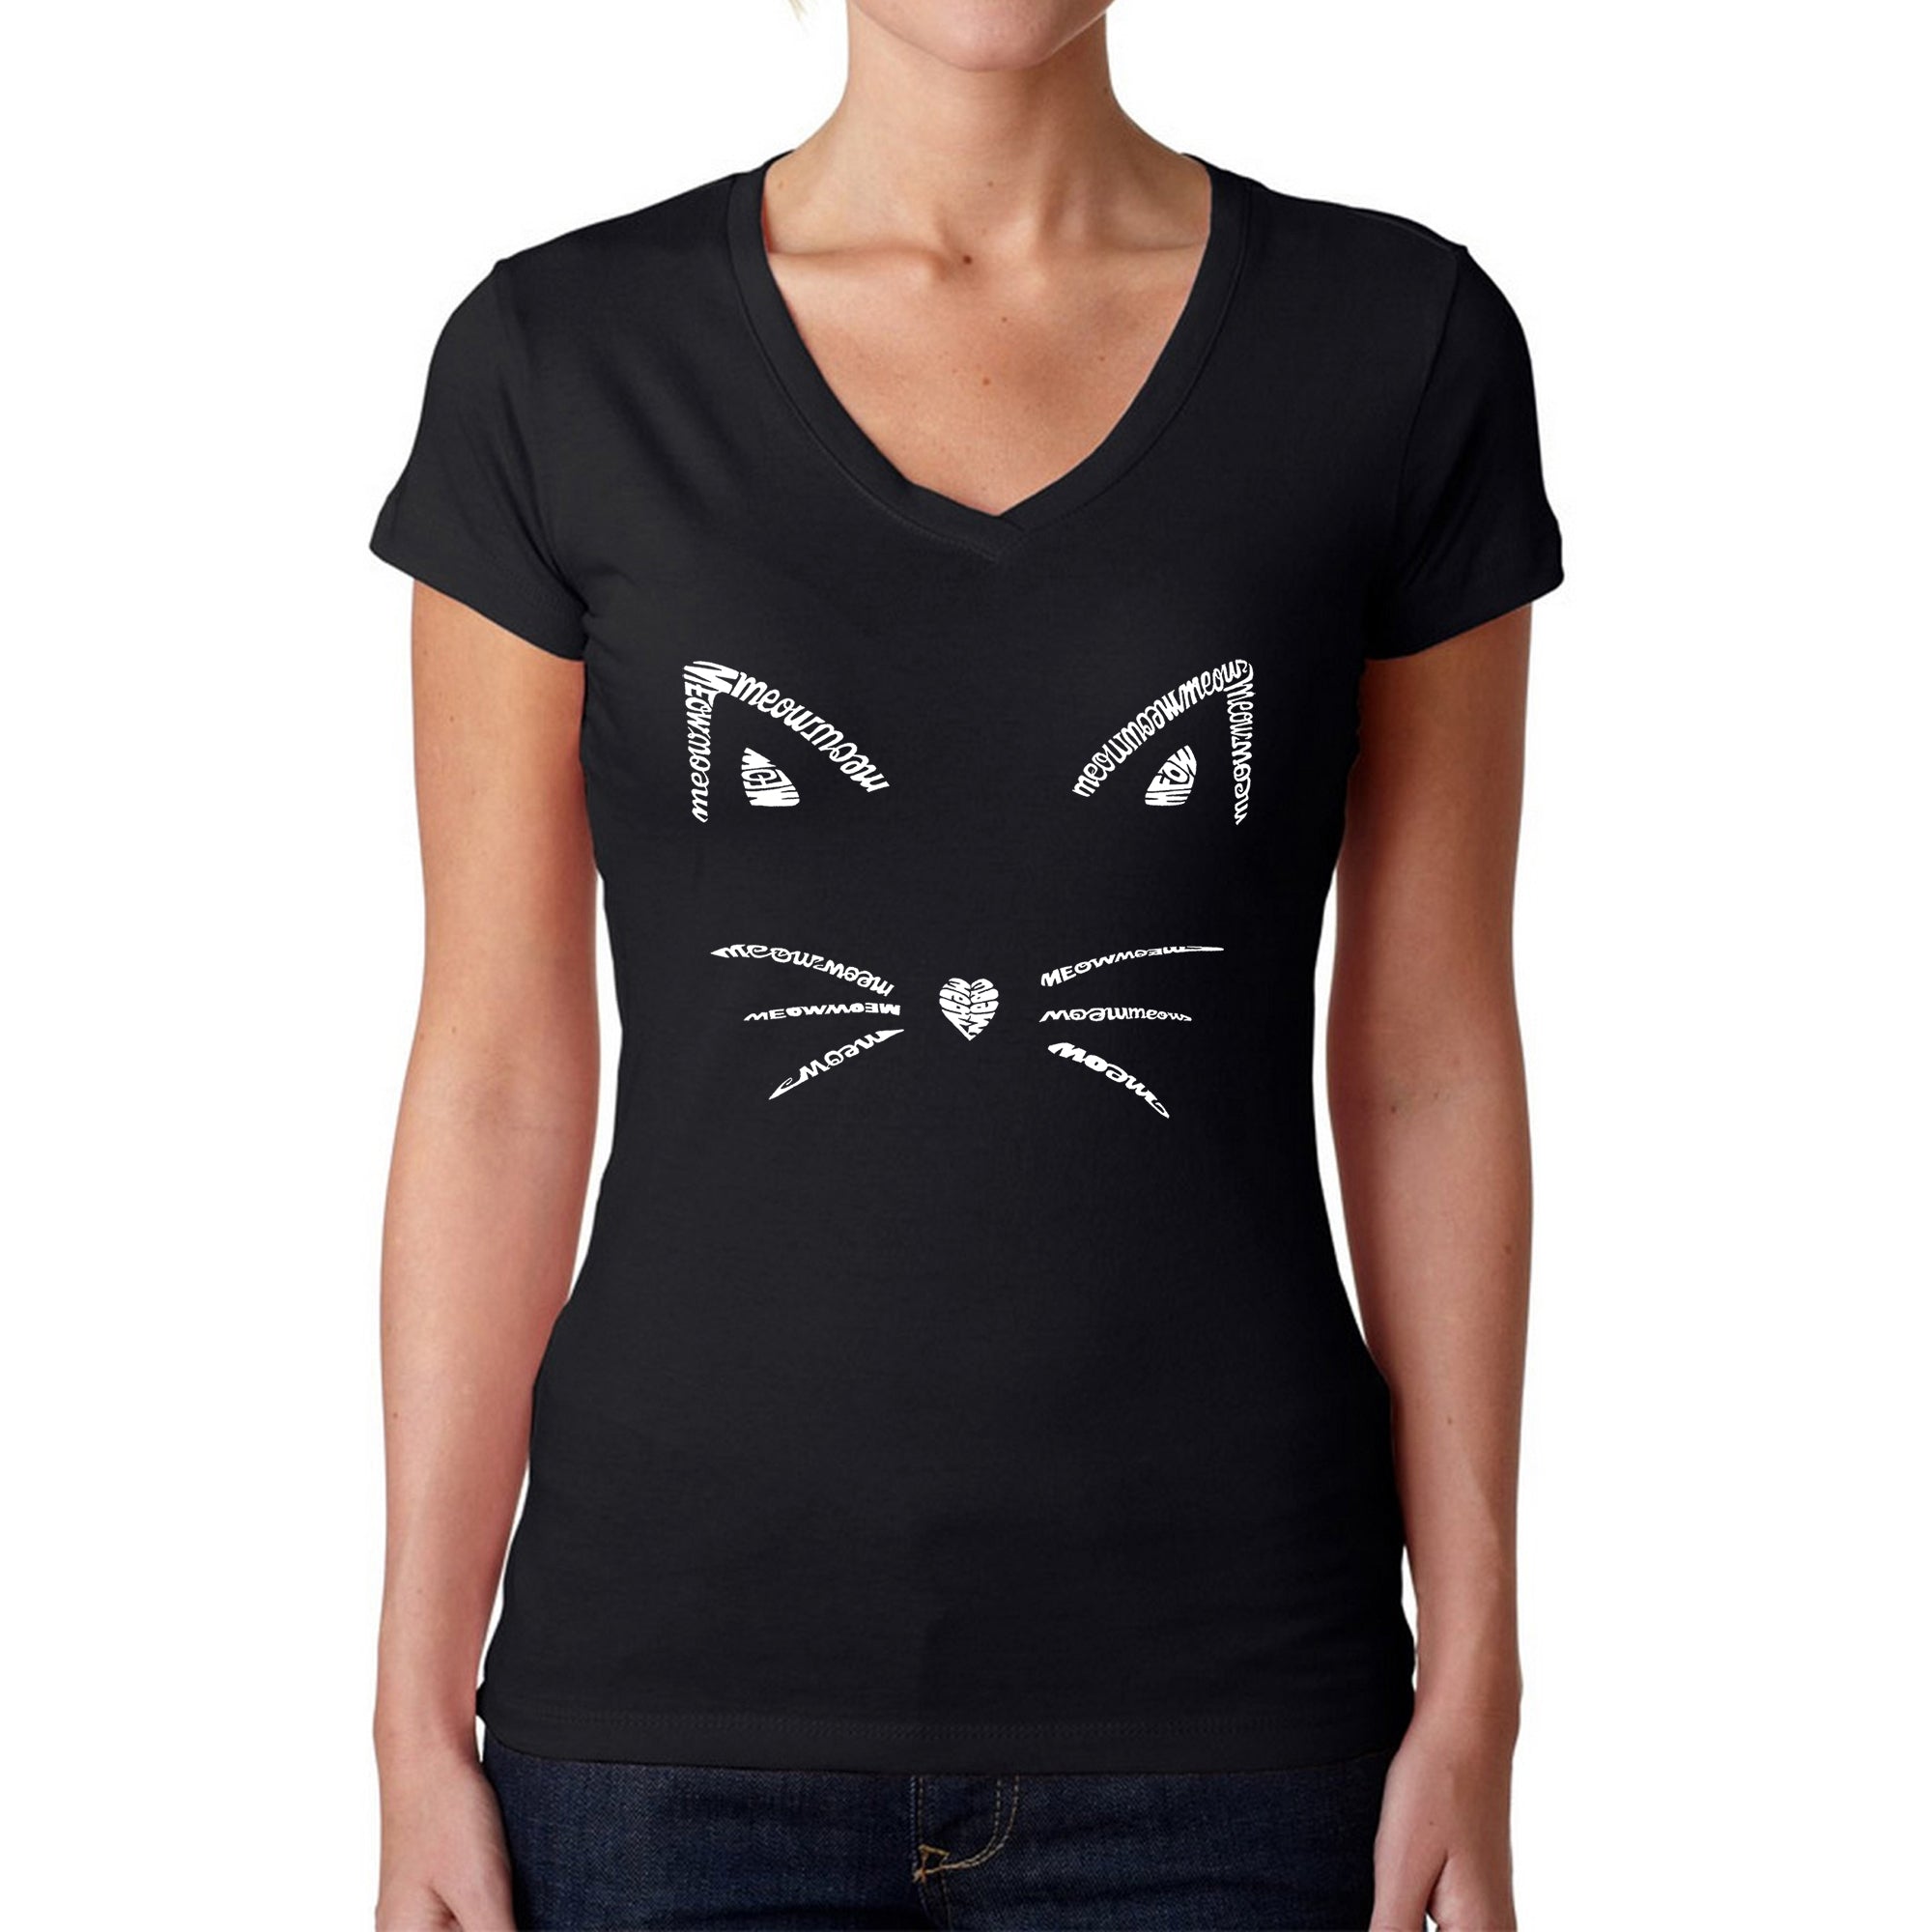 Whiskers - Women's Word Art V-Neck T-Shirt - Black - XX-Large